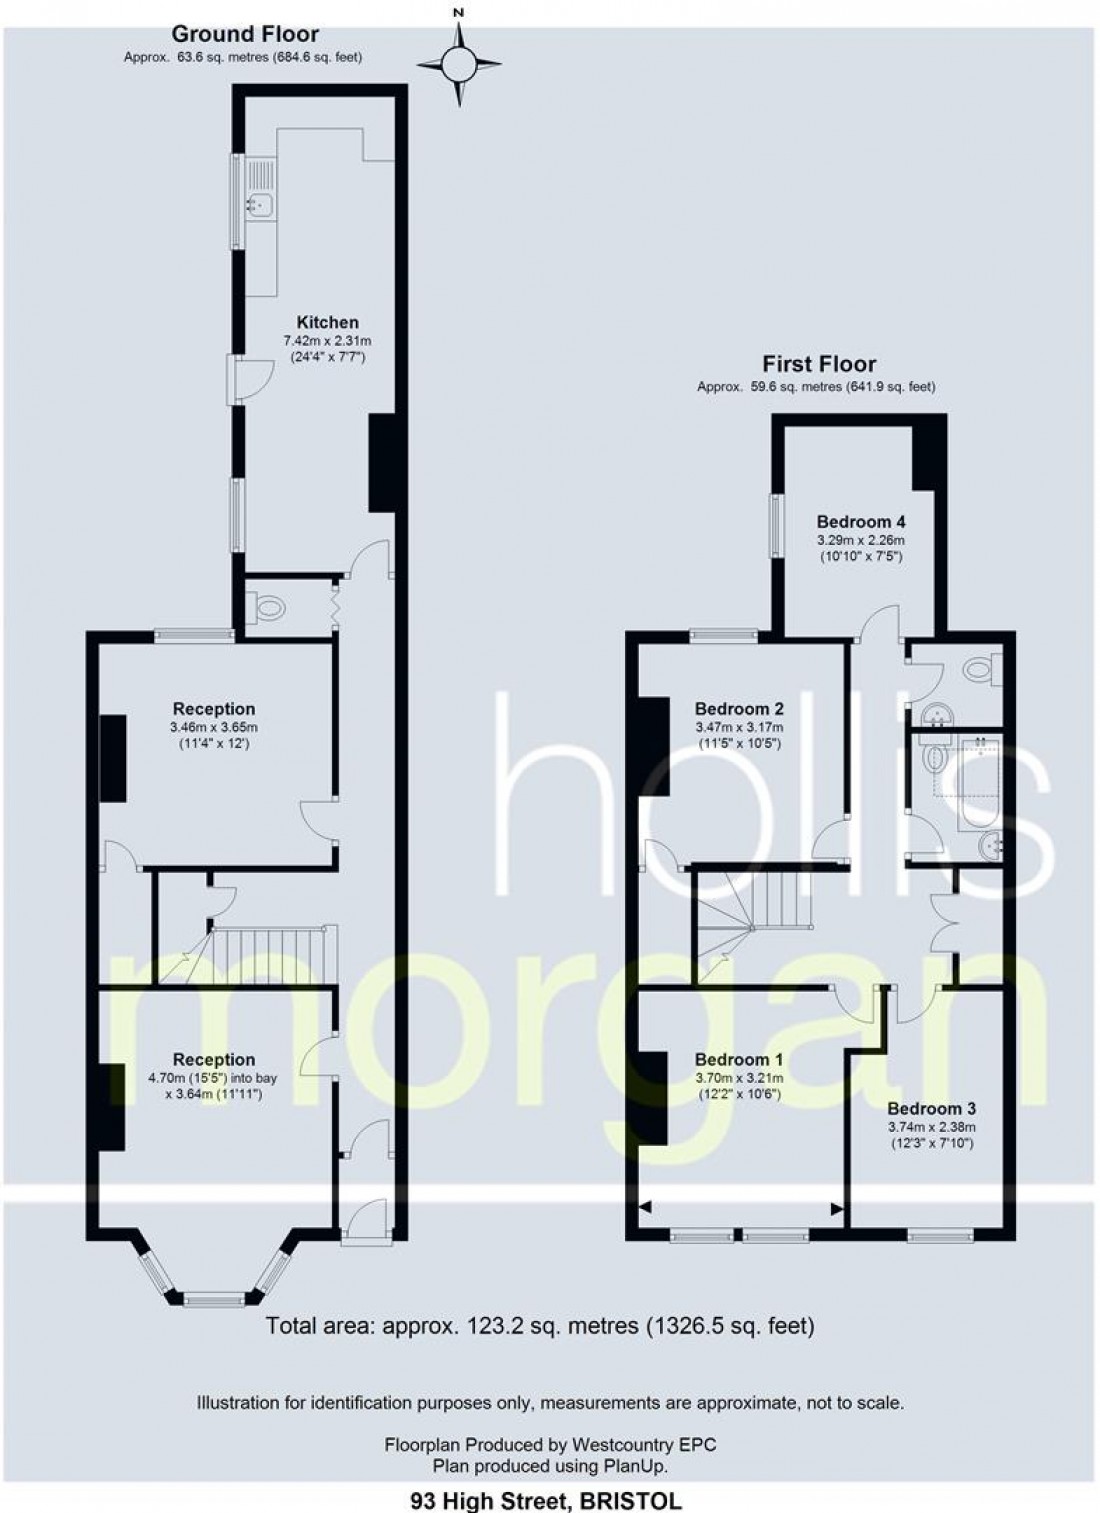 Floorplan for 93 High Street - HOUSE FOR UPDATING